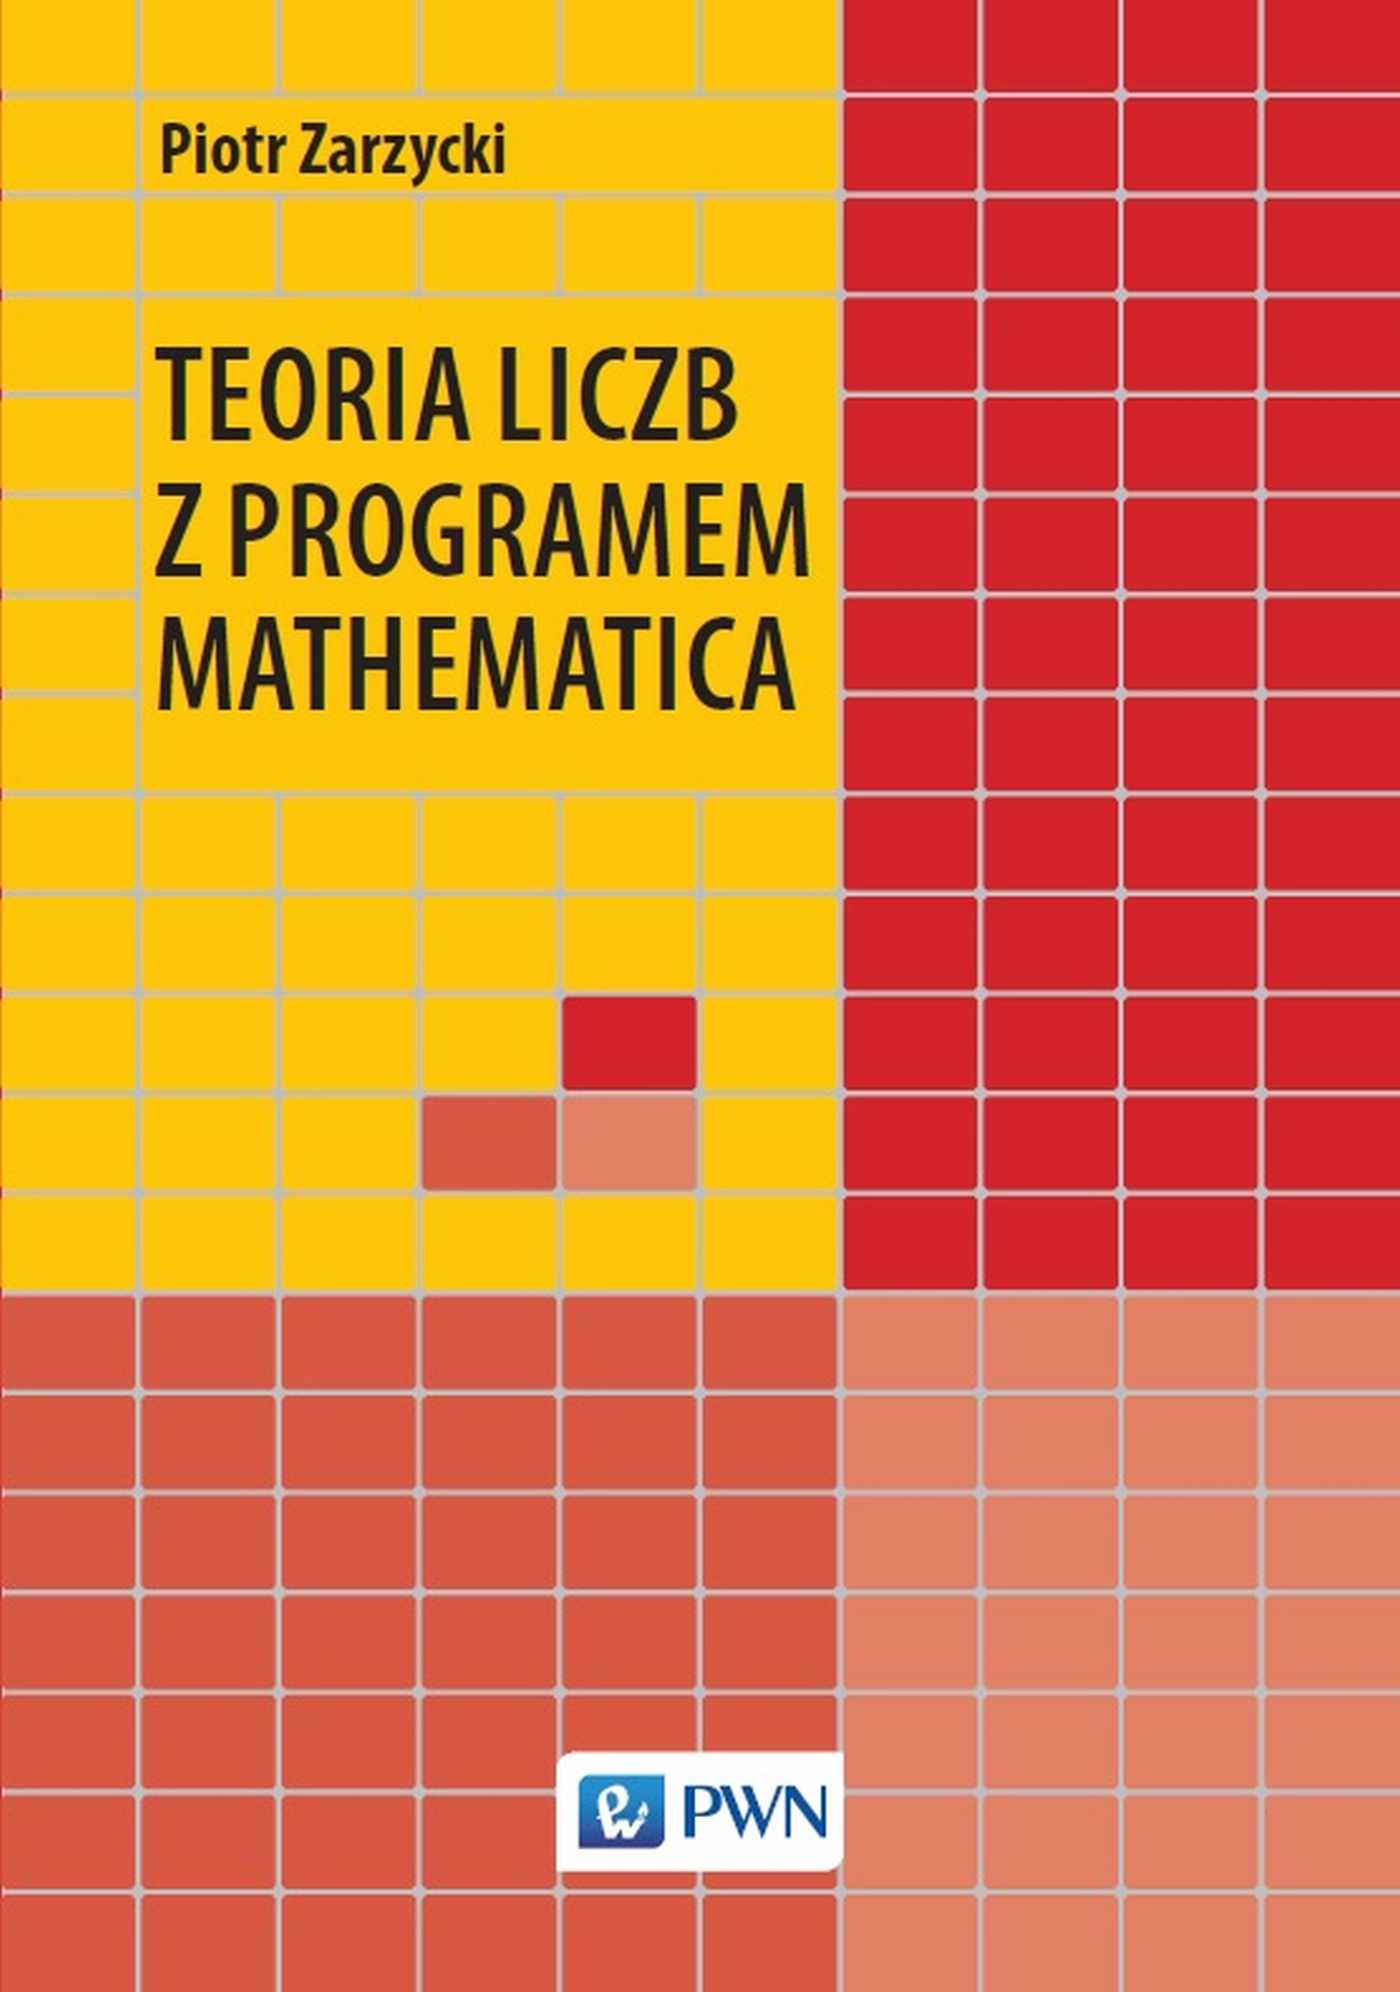 Kniha Teoria liczb z programem Mathematica Piotr Zarzycki